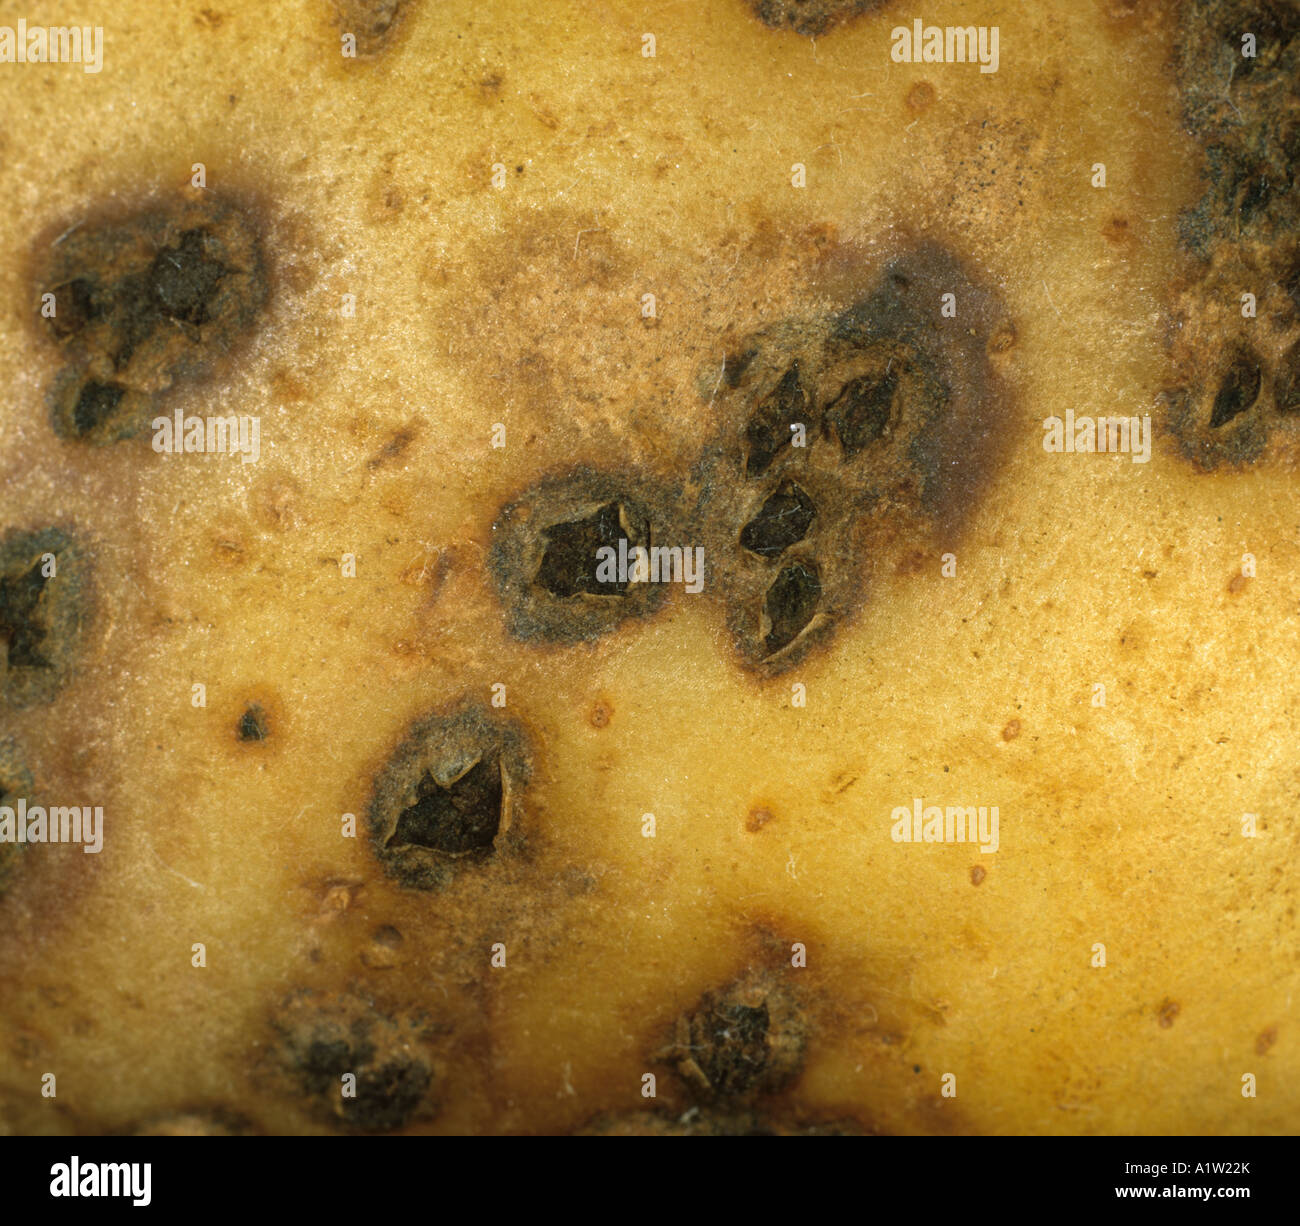 Powdery scab Spongospora subterranea lesions on a potato tuber Stock Photo